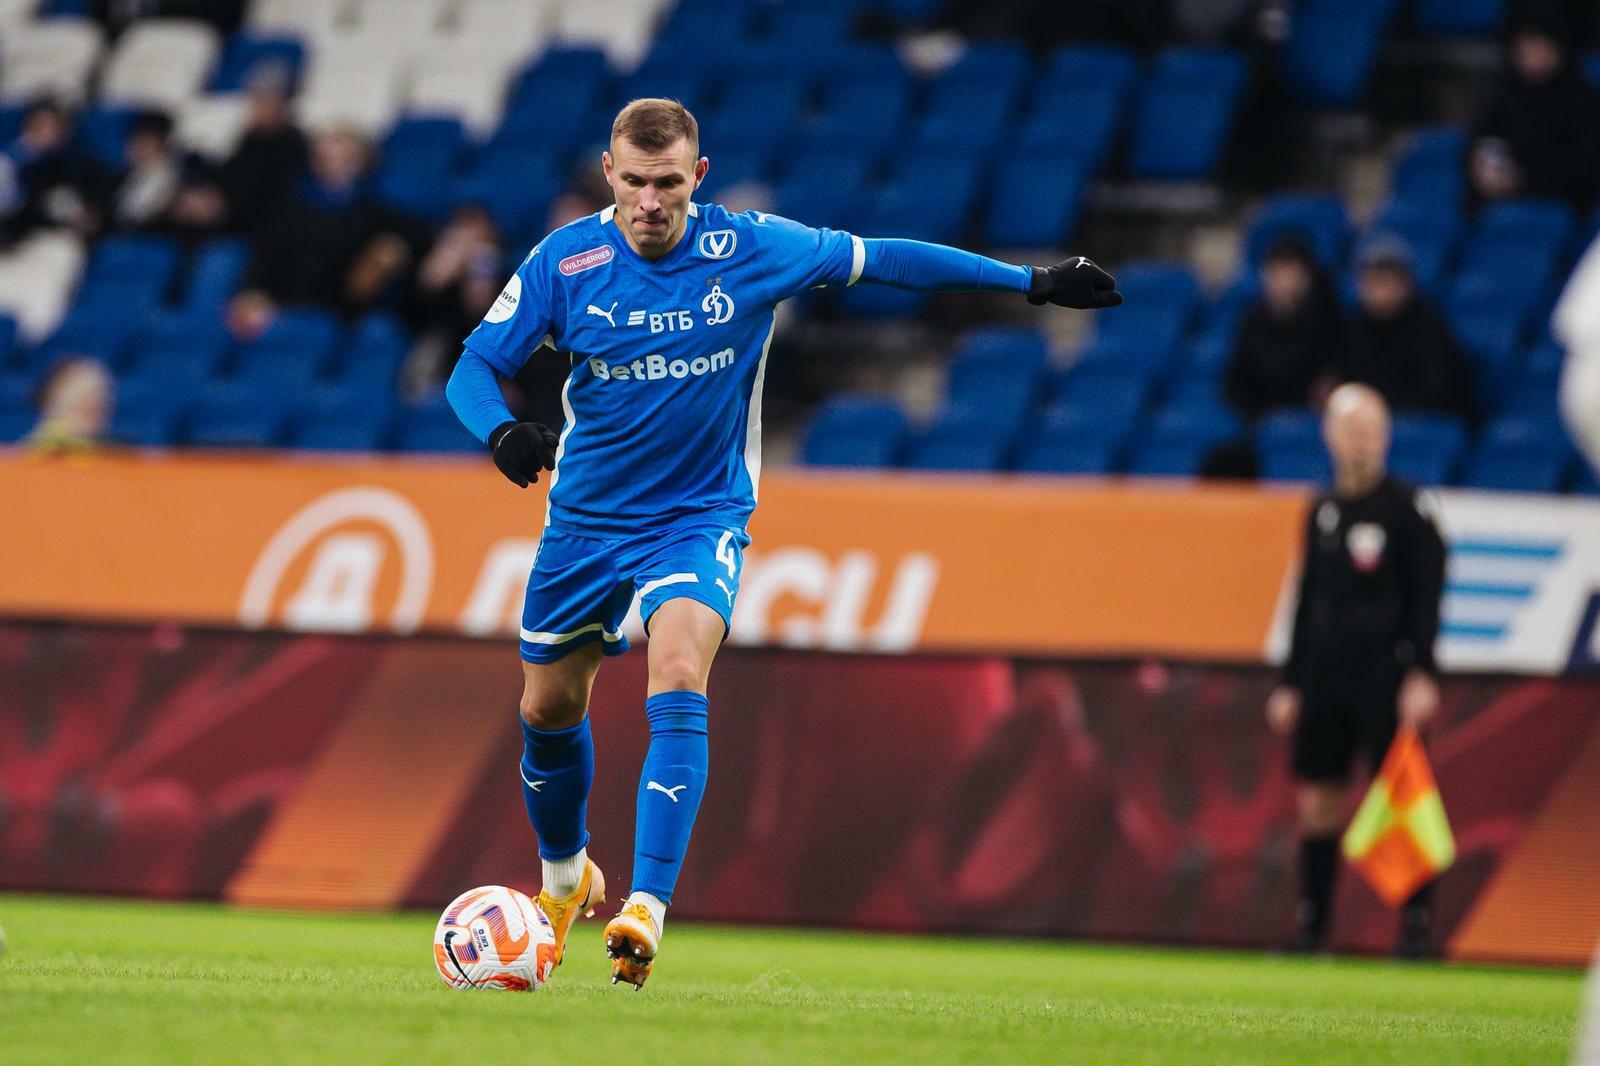 Noticias del FC "Dynamo" Moscú | Sergey Parshivlyuk: "Tenemos fe en el equipo y un resultado positivo". Sitio oficial del club Dynamo.